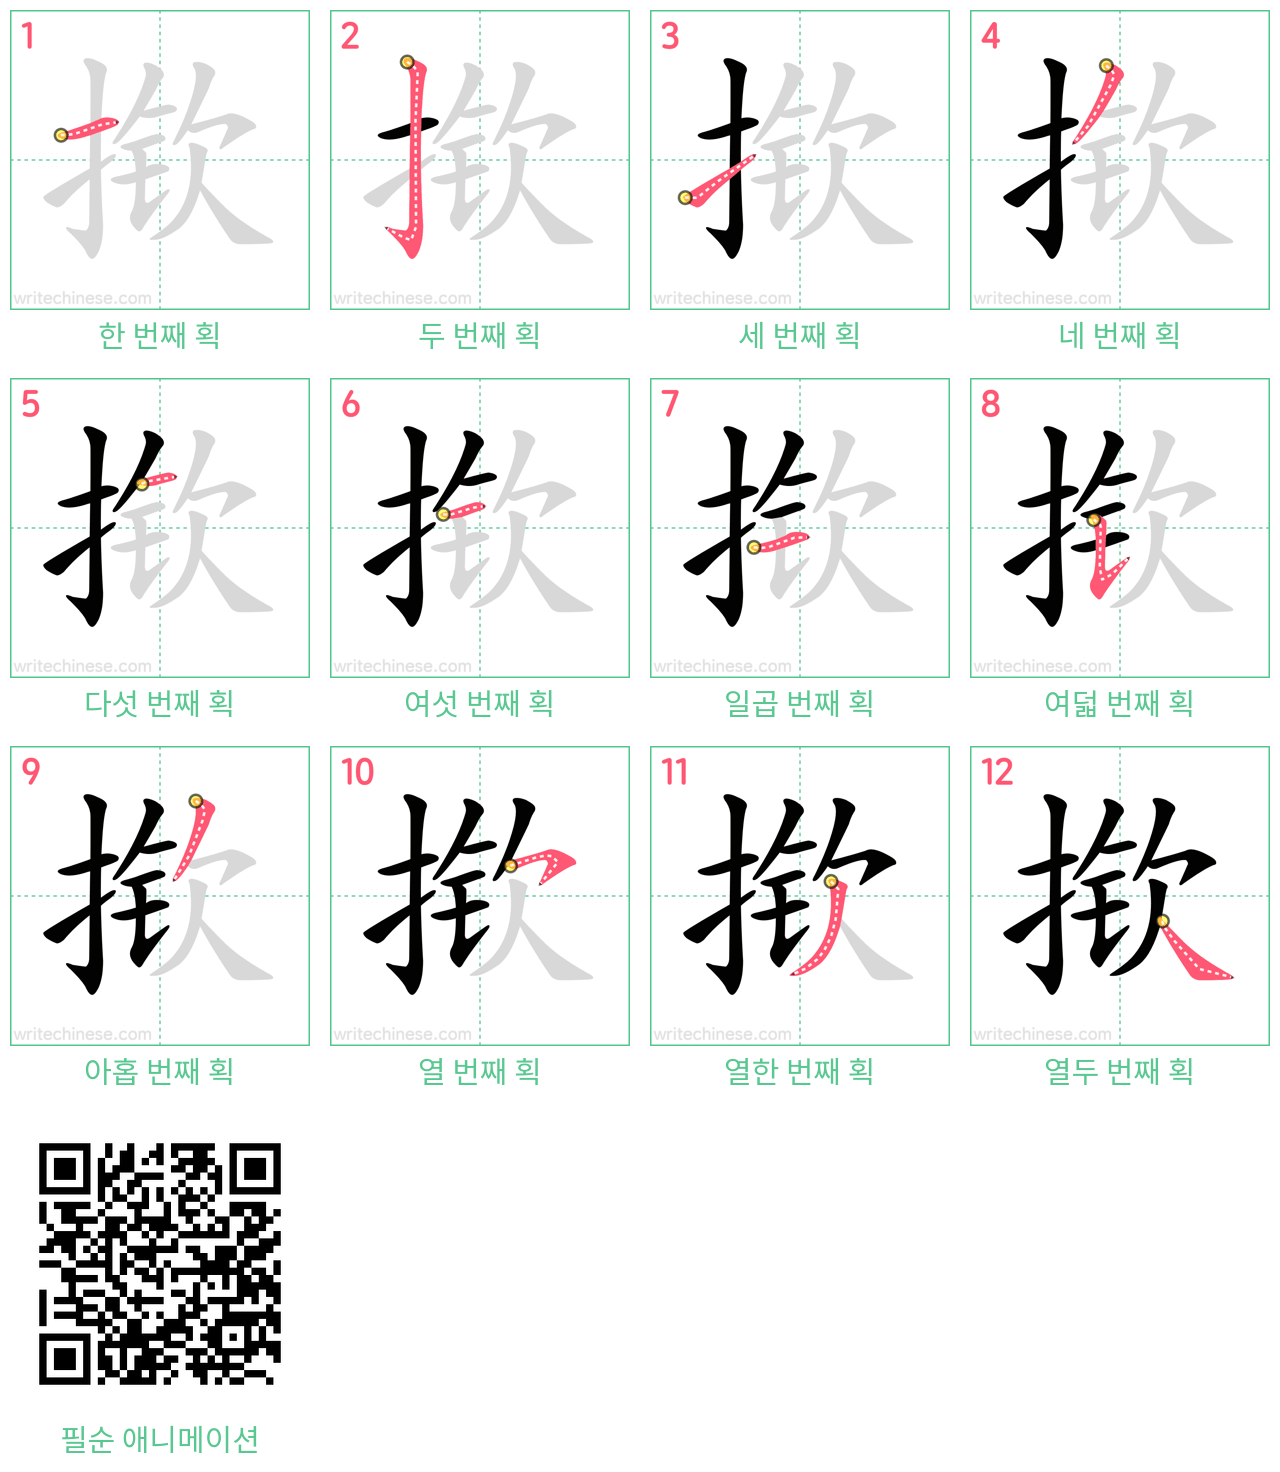 揿 step-by-step stroke order diagrams